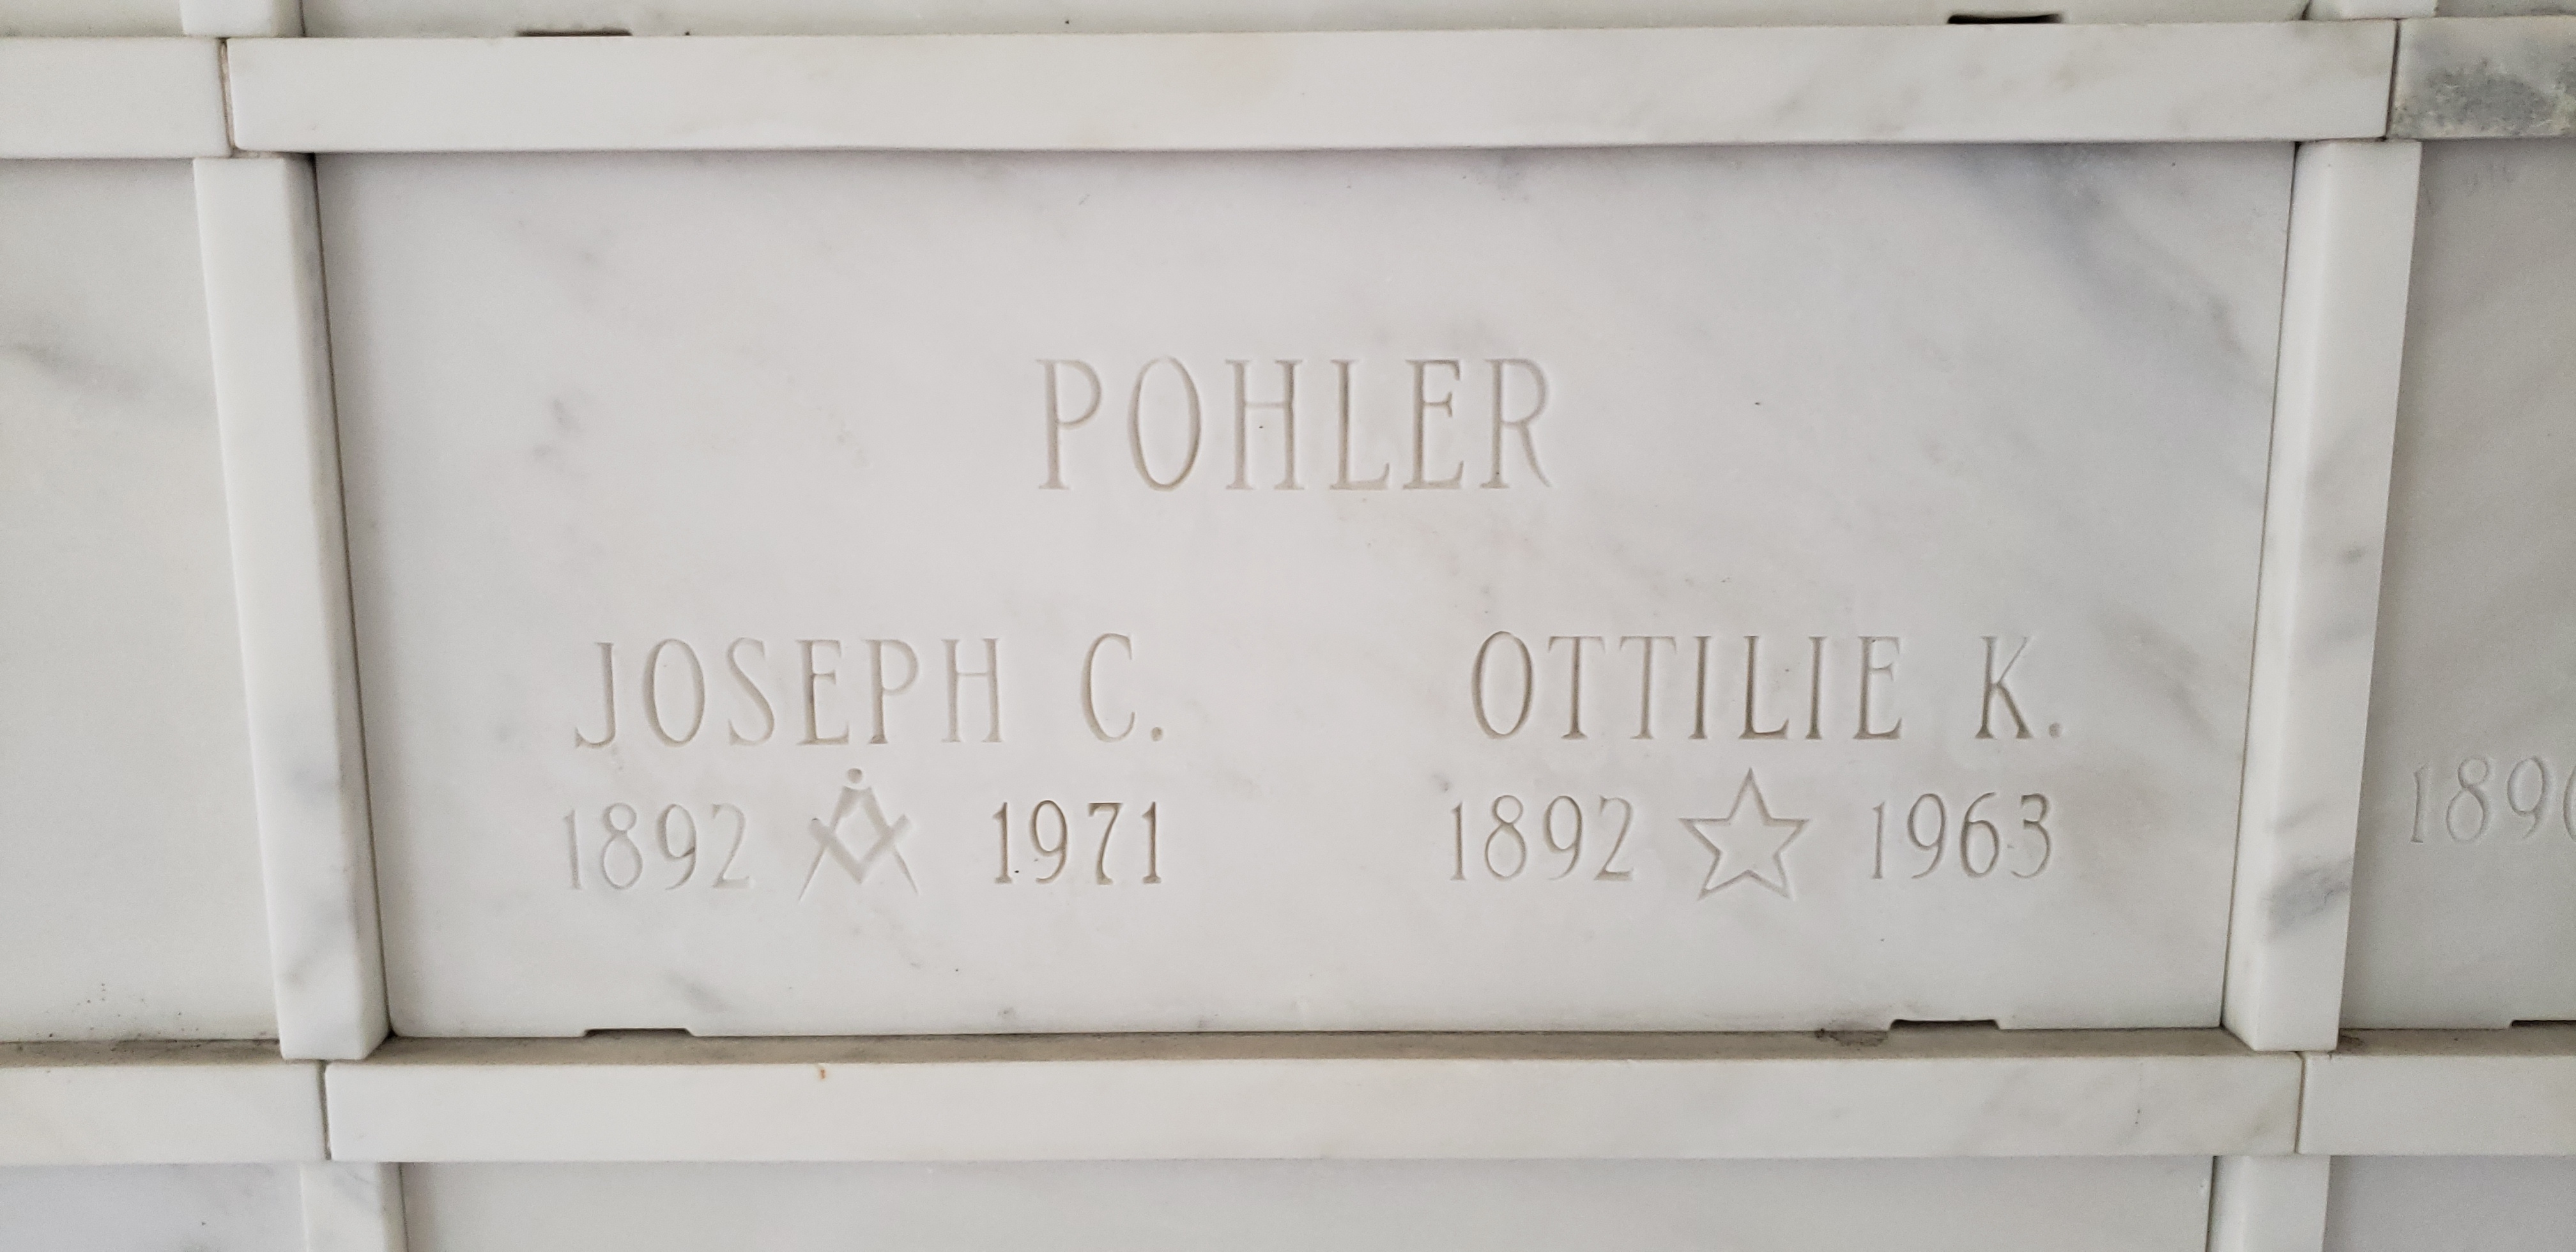 Joseph C Pohler